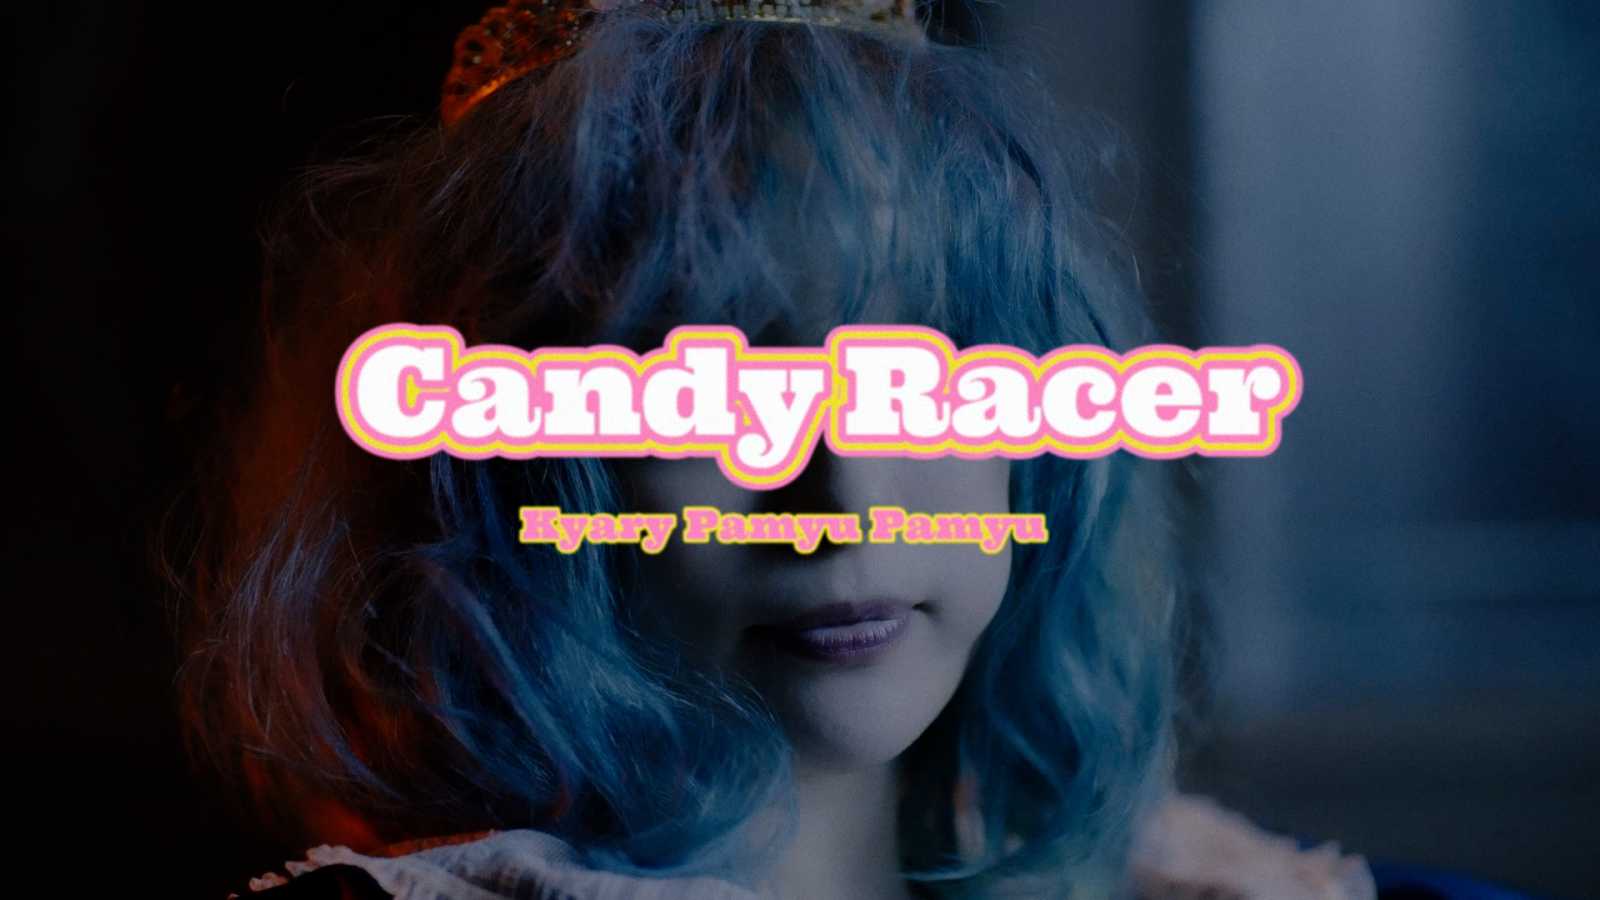 Kyary Pamyu Pamyu udostępniła teledysk do "Candy Racer" © Kyary Pamyu Pamyu. All rights reserved.